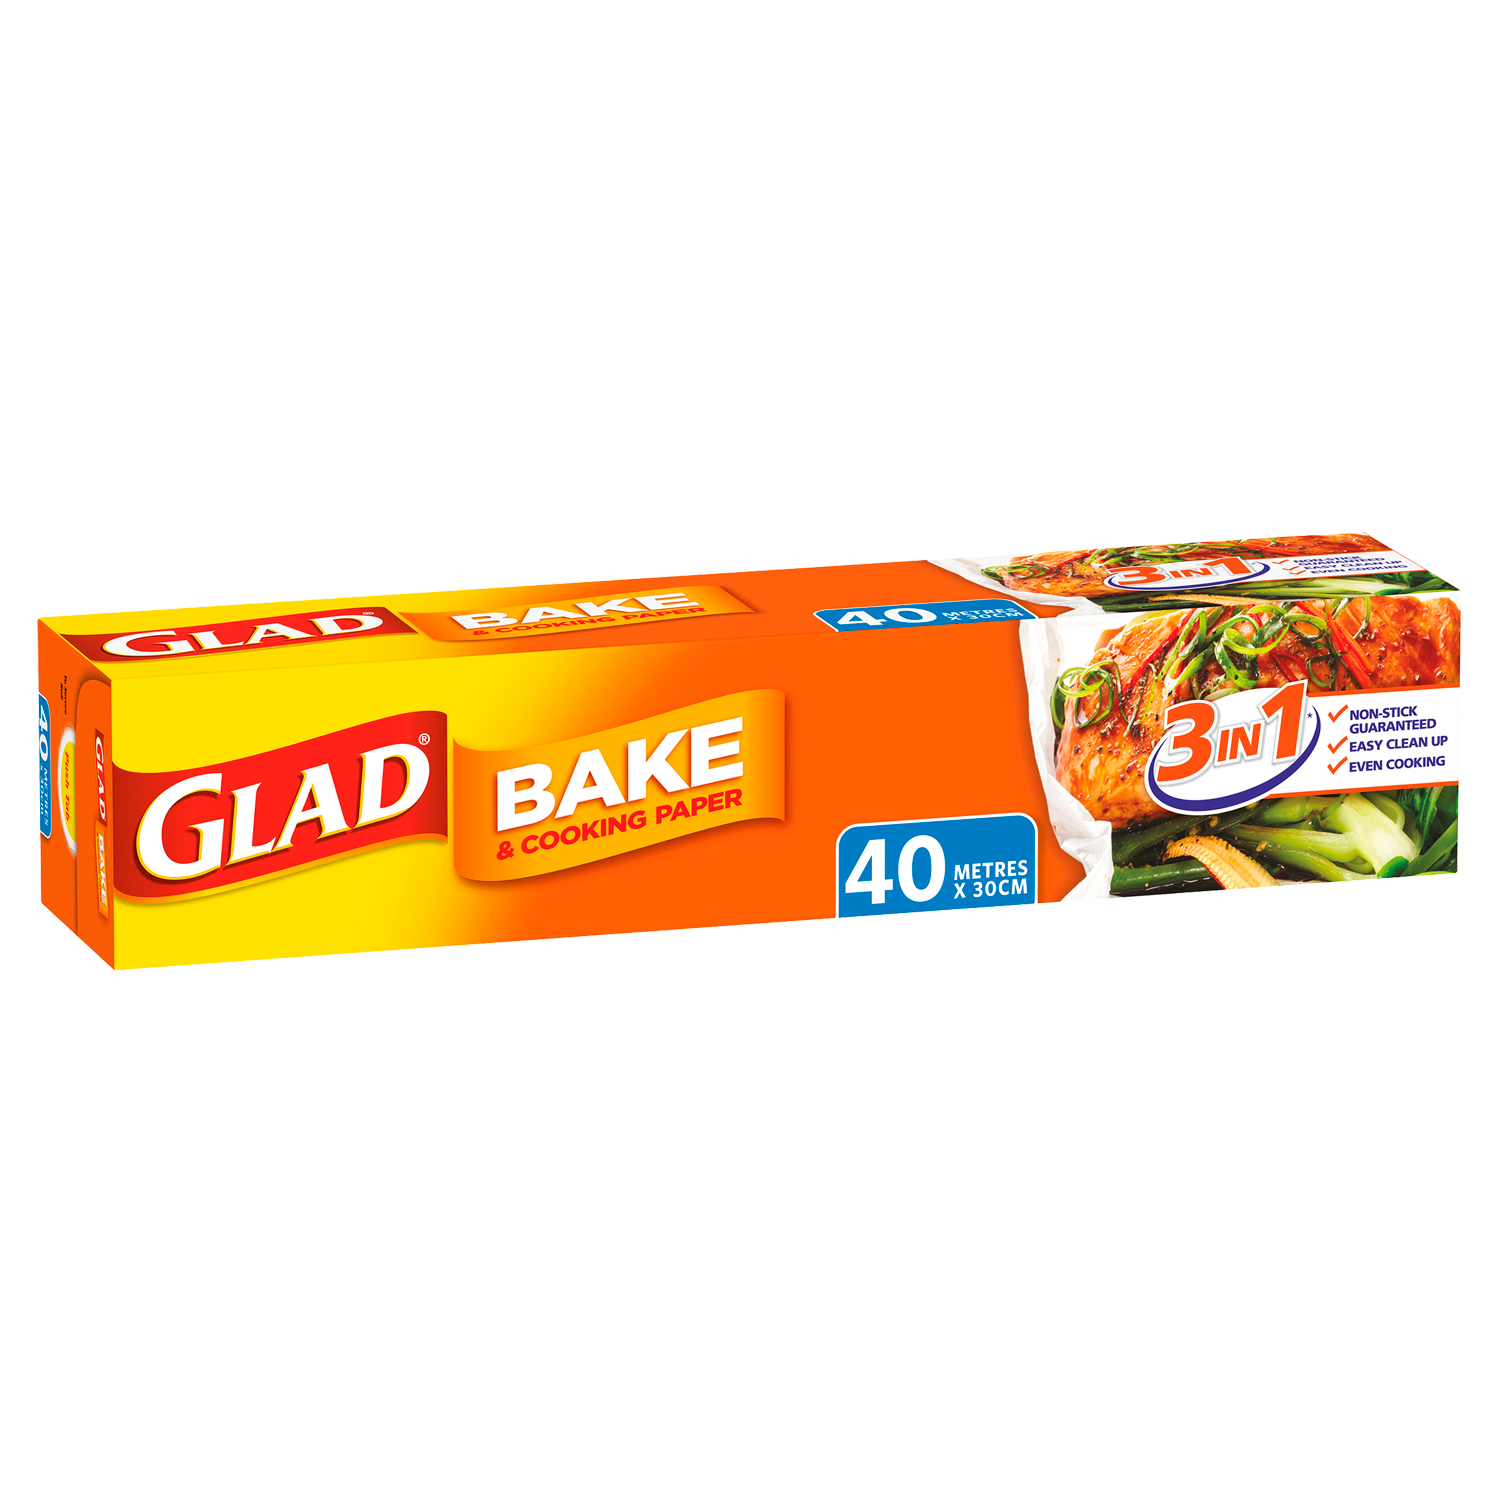 https://www.glad.com.au/wp-content/uploads/sites/2/2022/05/Glad-Bake-40m.png